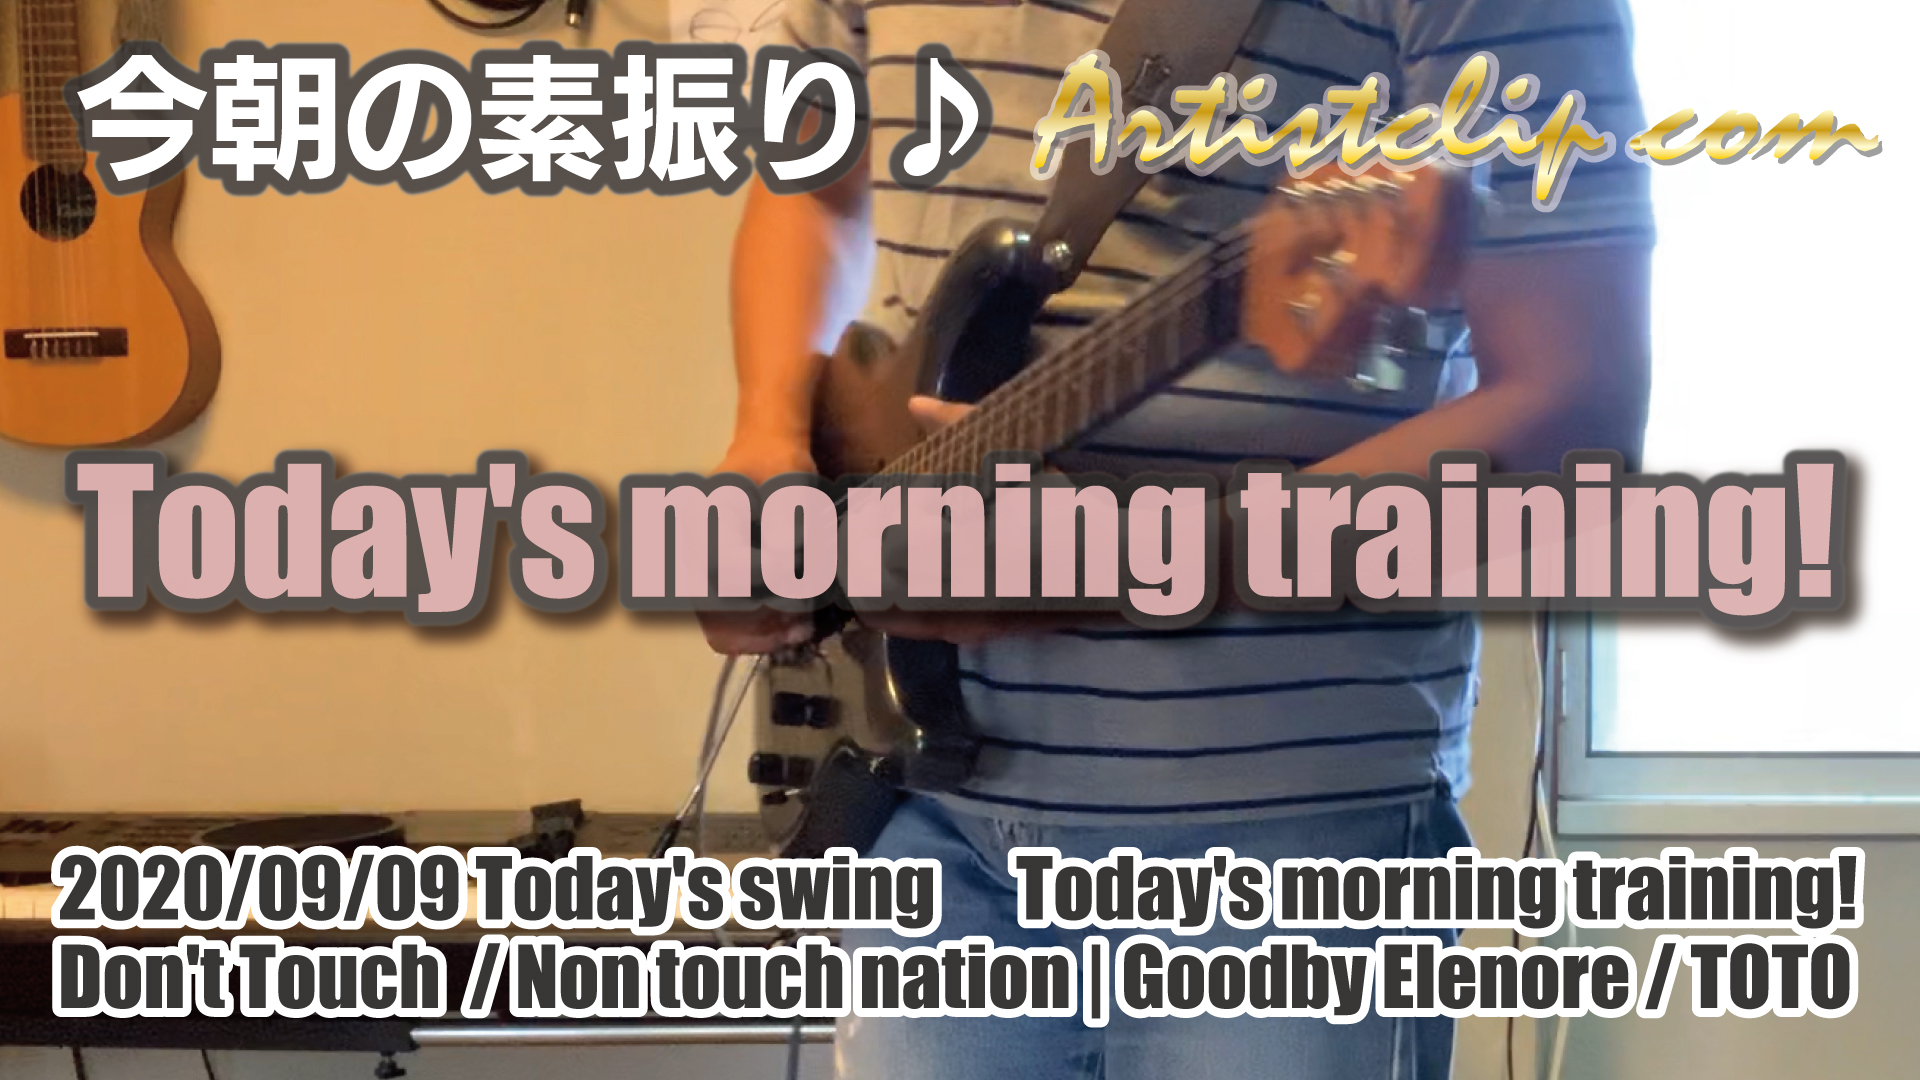 2020-09-09 Today’s morning training 今朝の素振り！昨日は諸処あって素振りはお休みでした。今日は2曲！